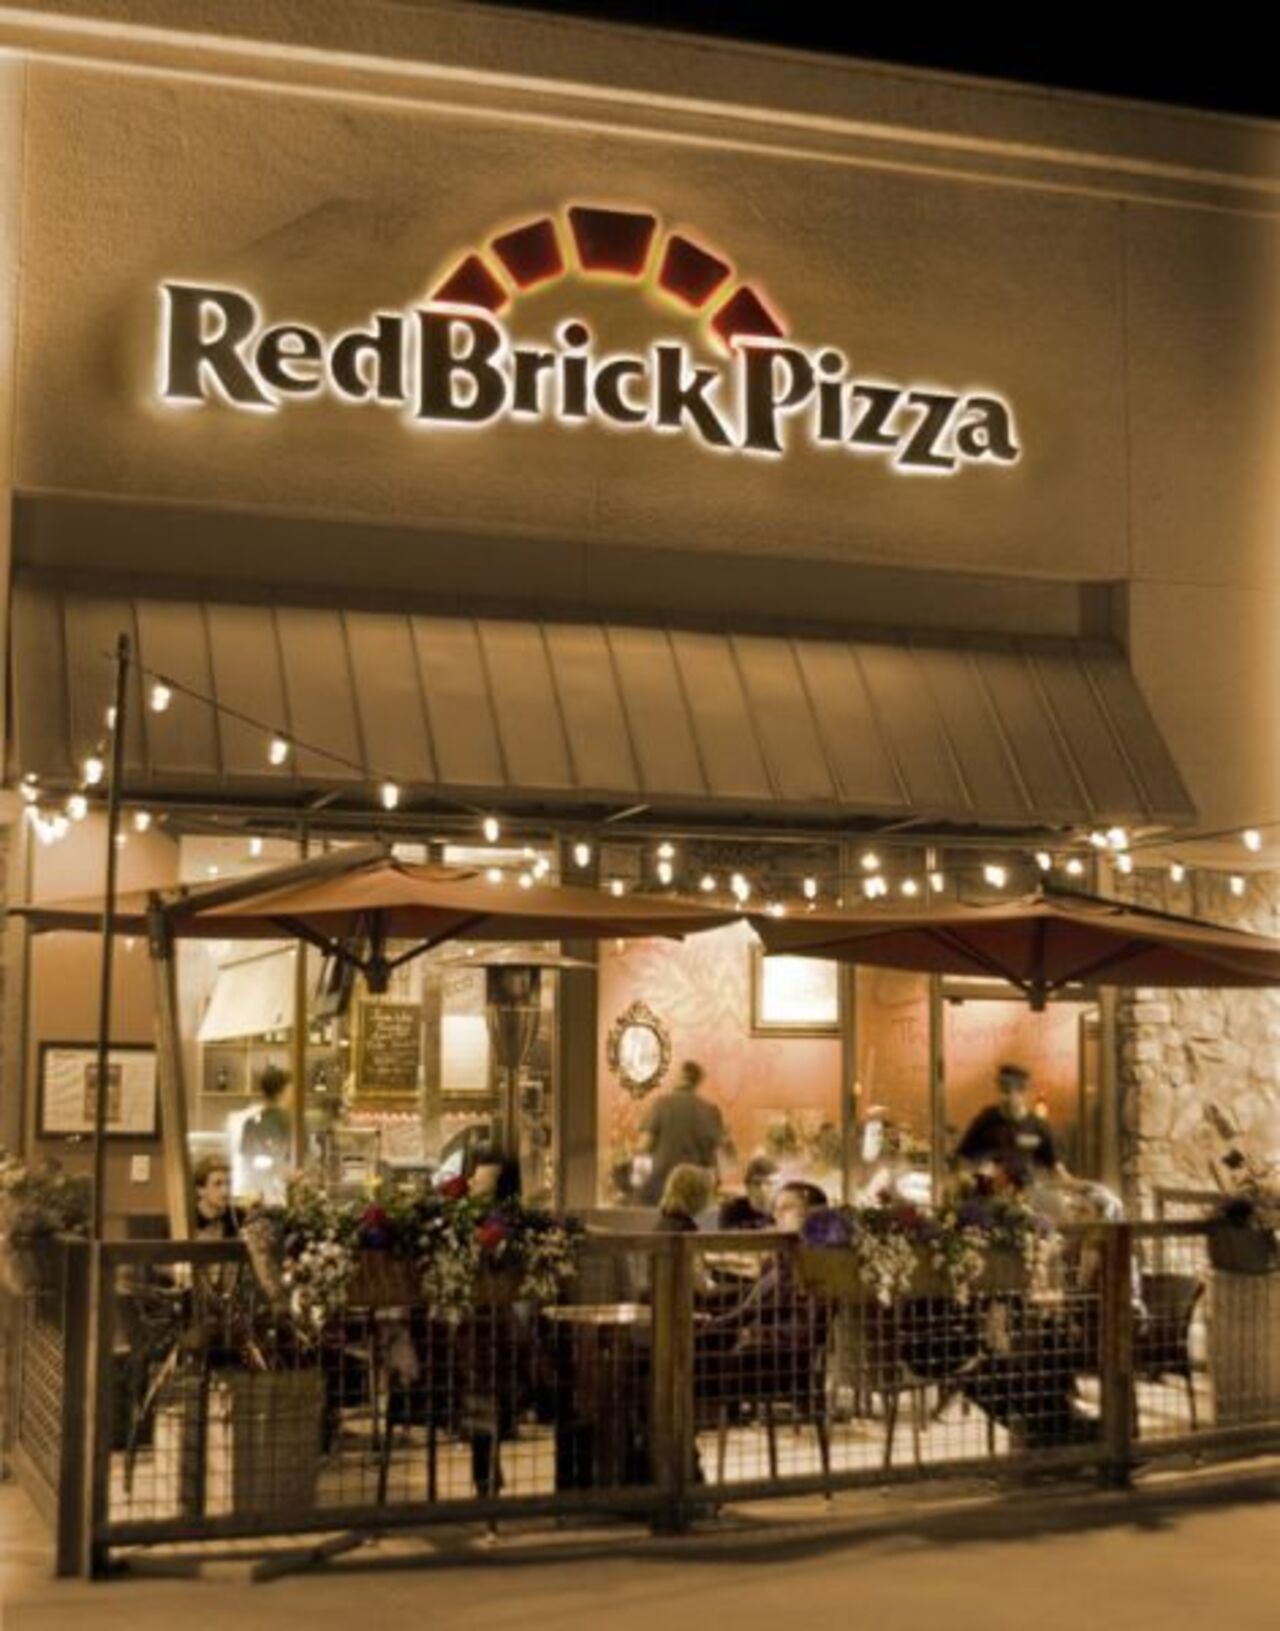 A photo of RedBrick Pizza